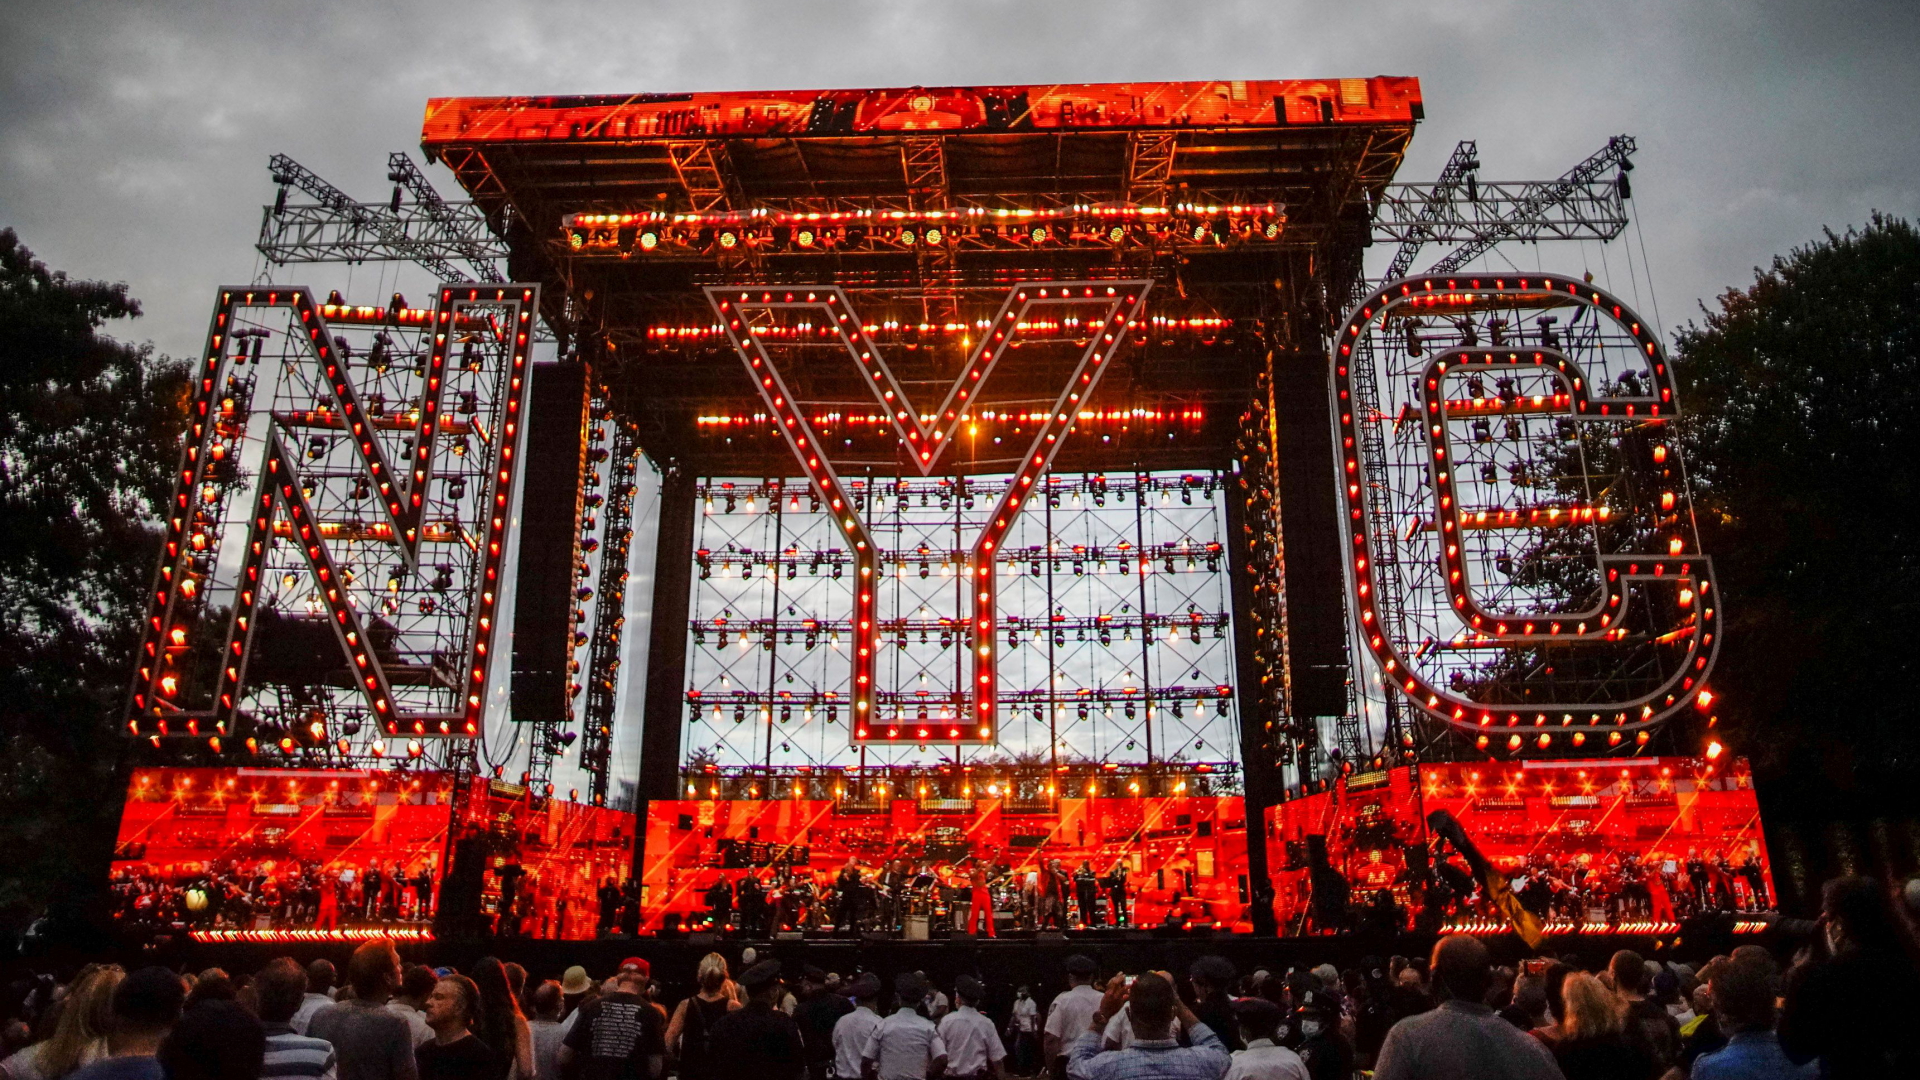 Hell erleuchtet Bühne des "We love NCY: Homecoming Concert" im Central Park vor wolkenvergangenem Himmel. | REUTERS